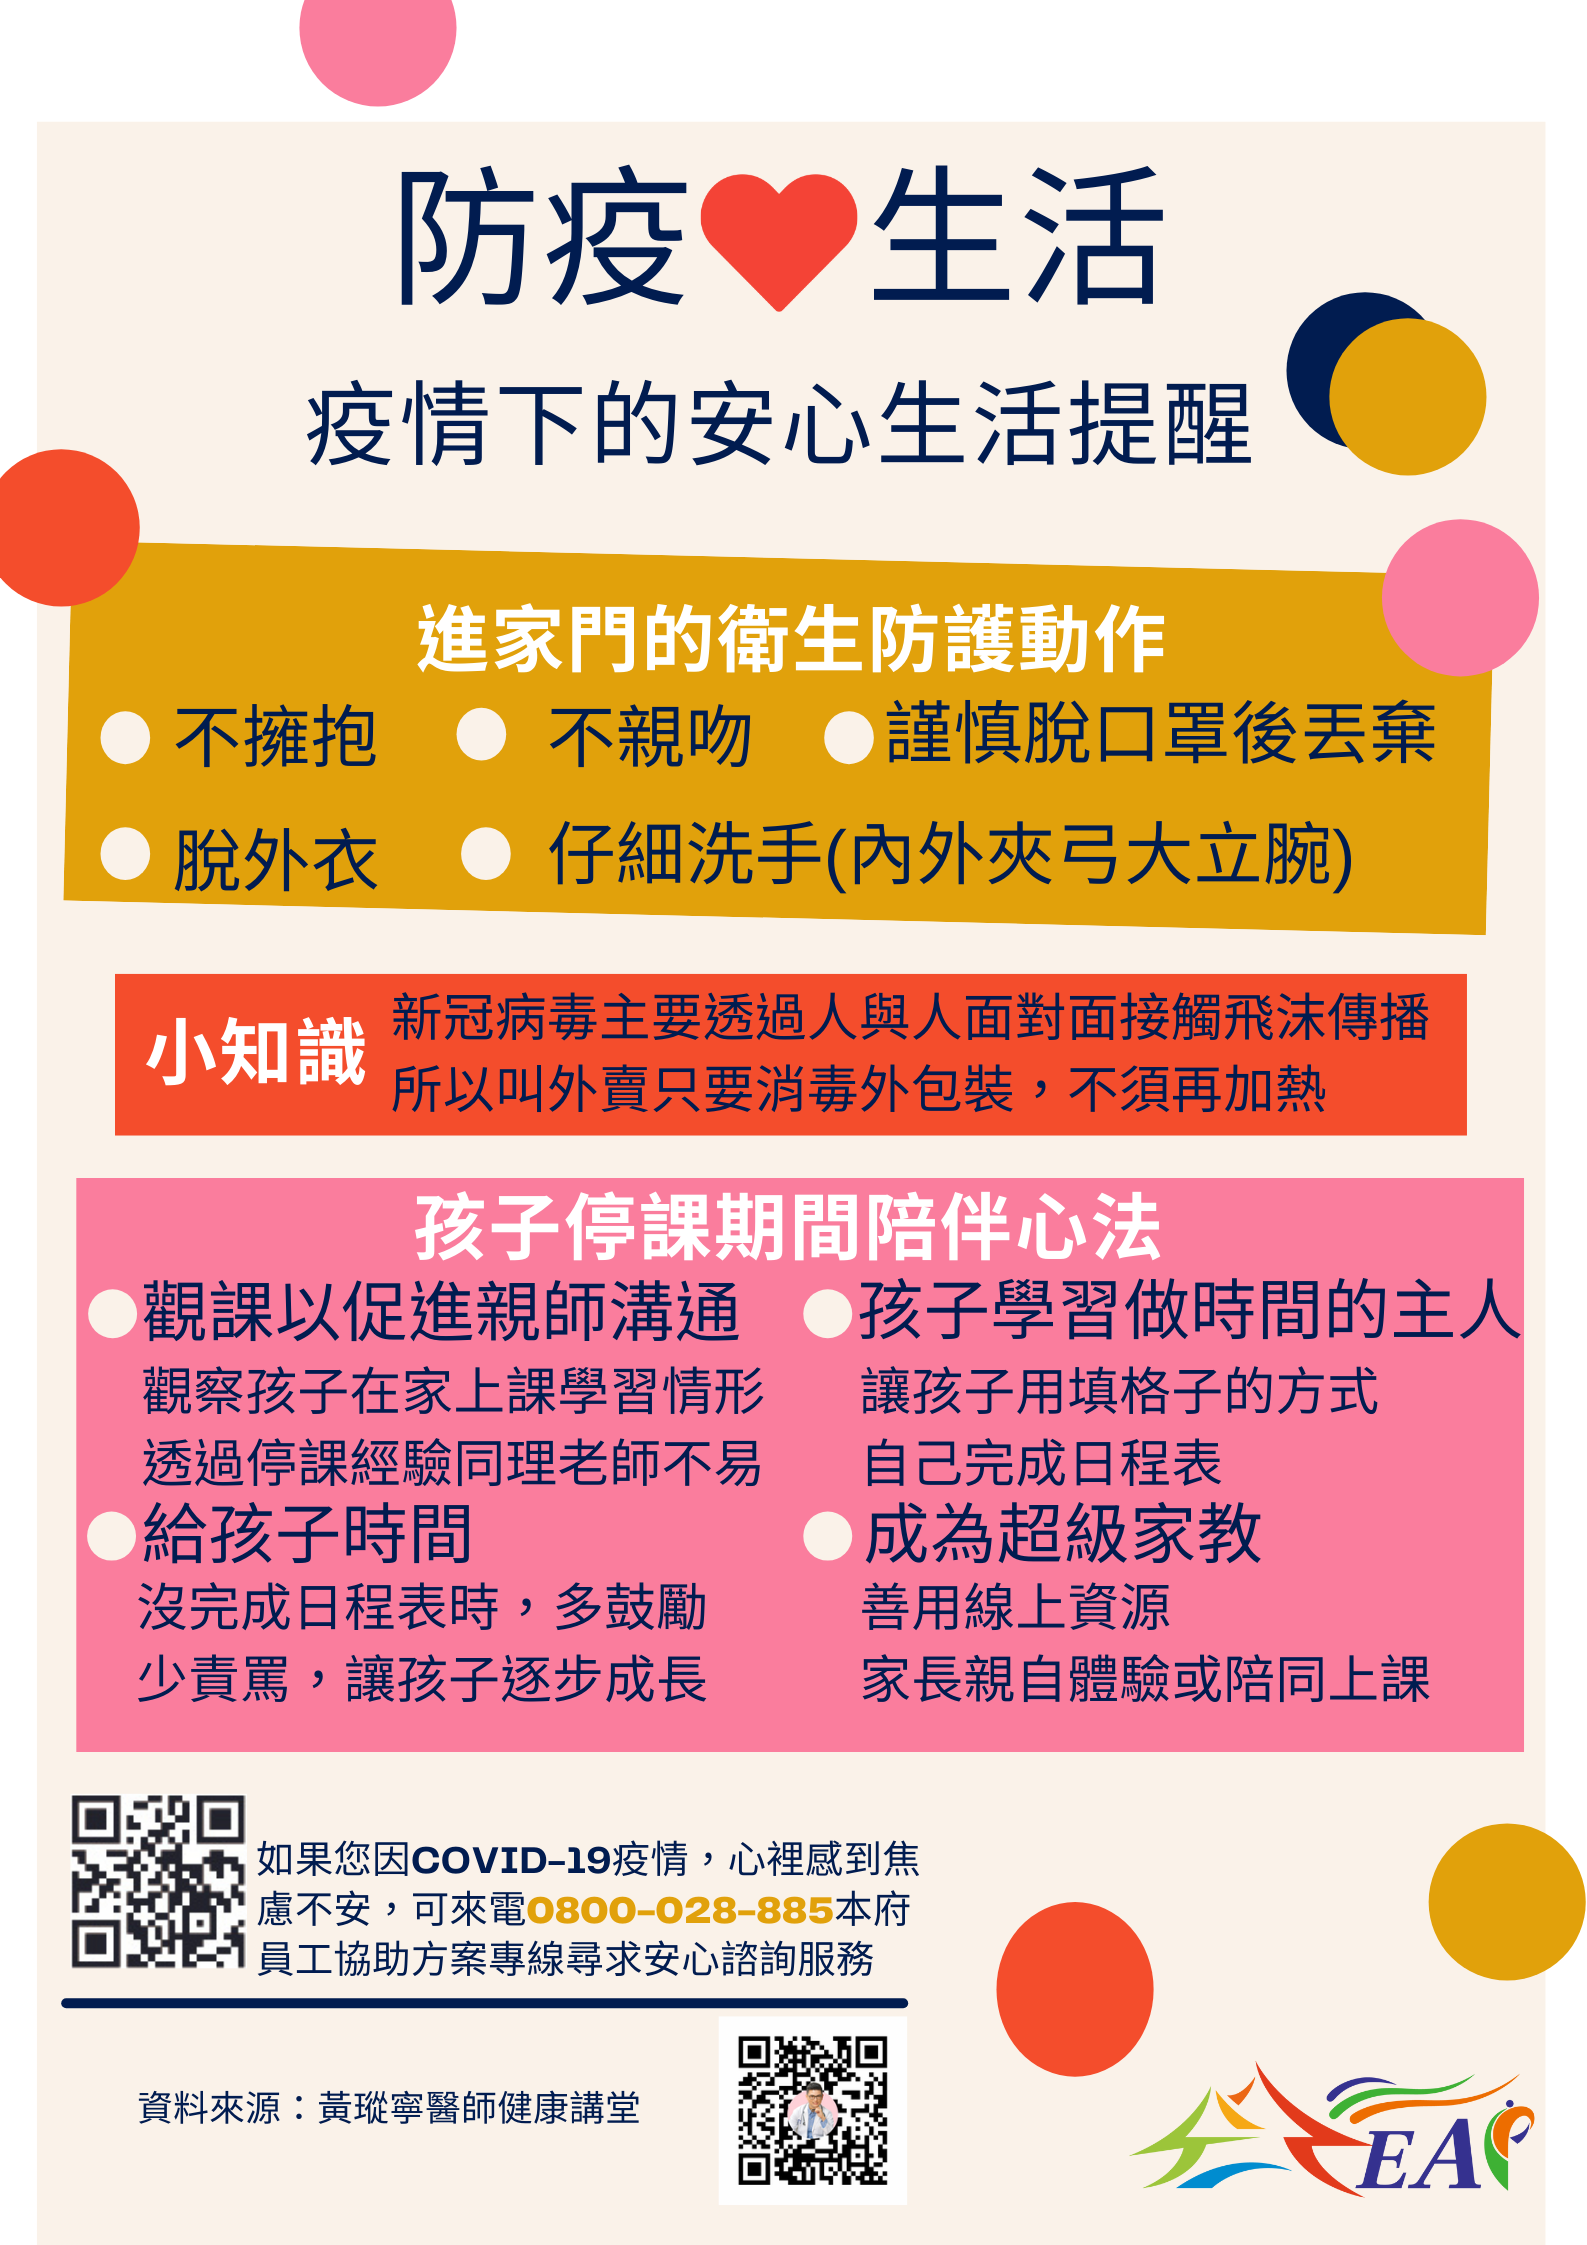 1100721-臺中市政府110年度防疫安心宣導Part4-疫情下的安心生活提醒